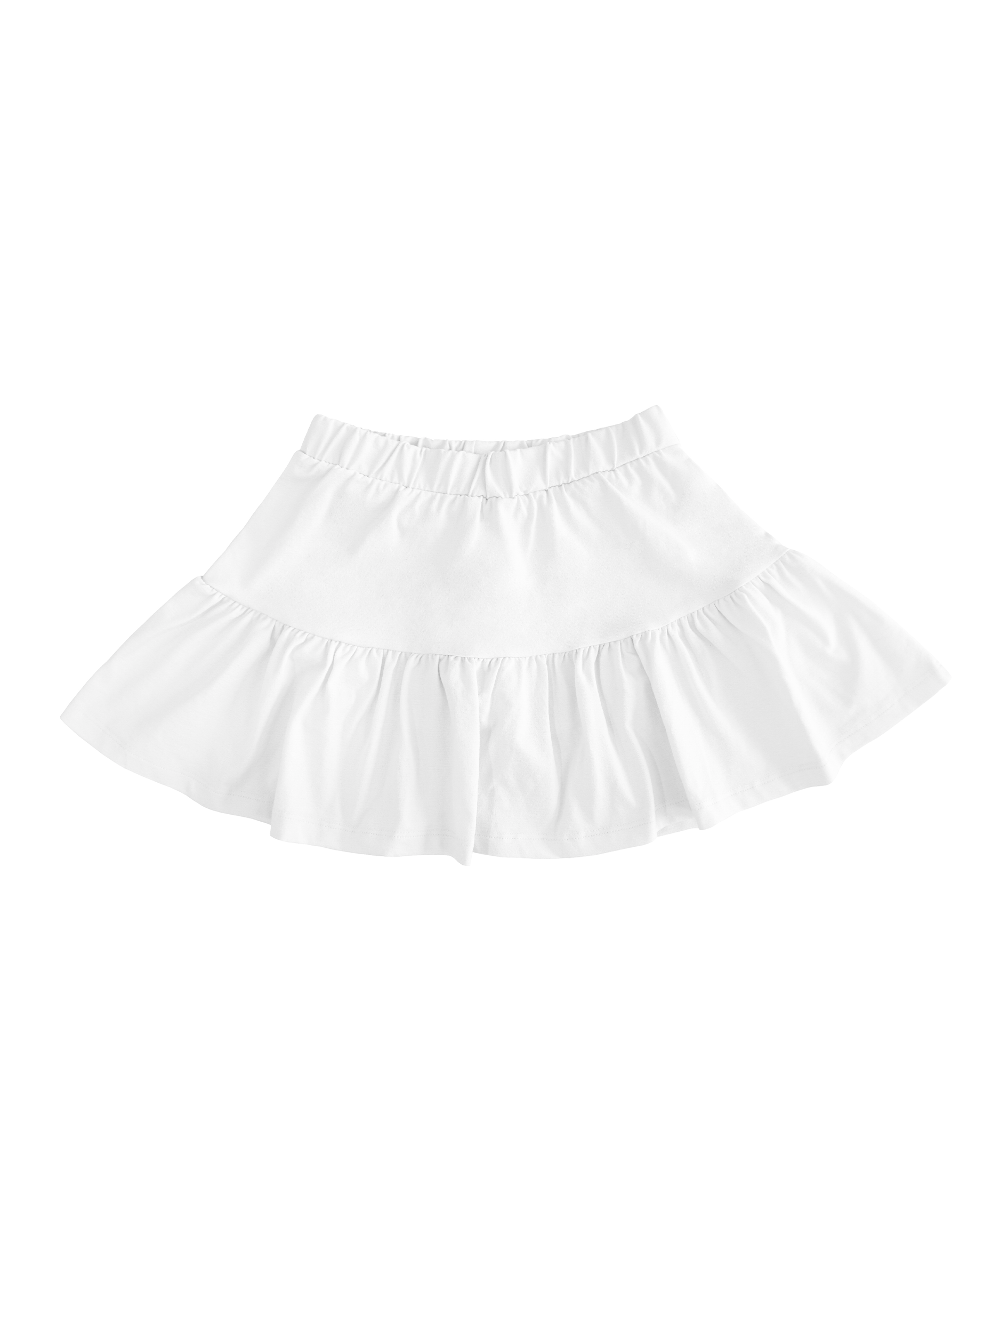 Soft Ice Skirt : White